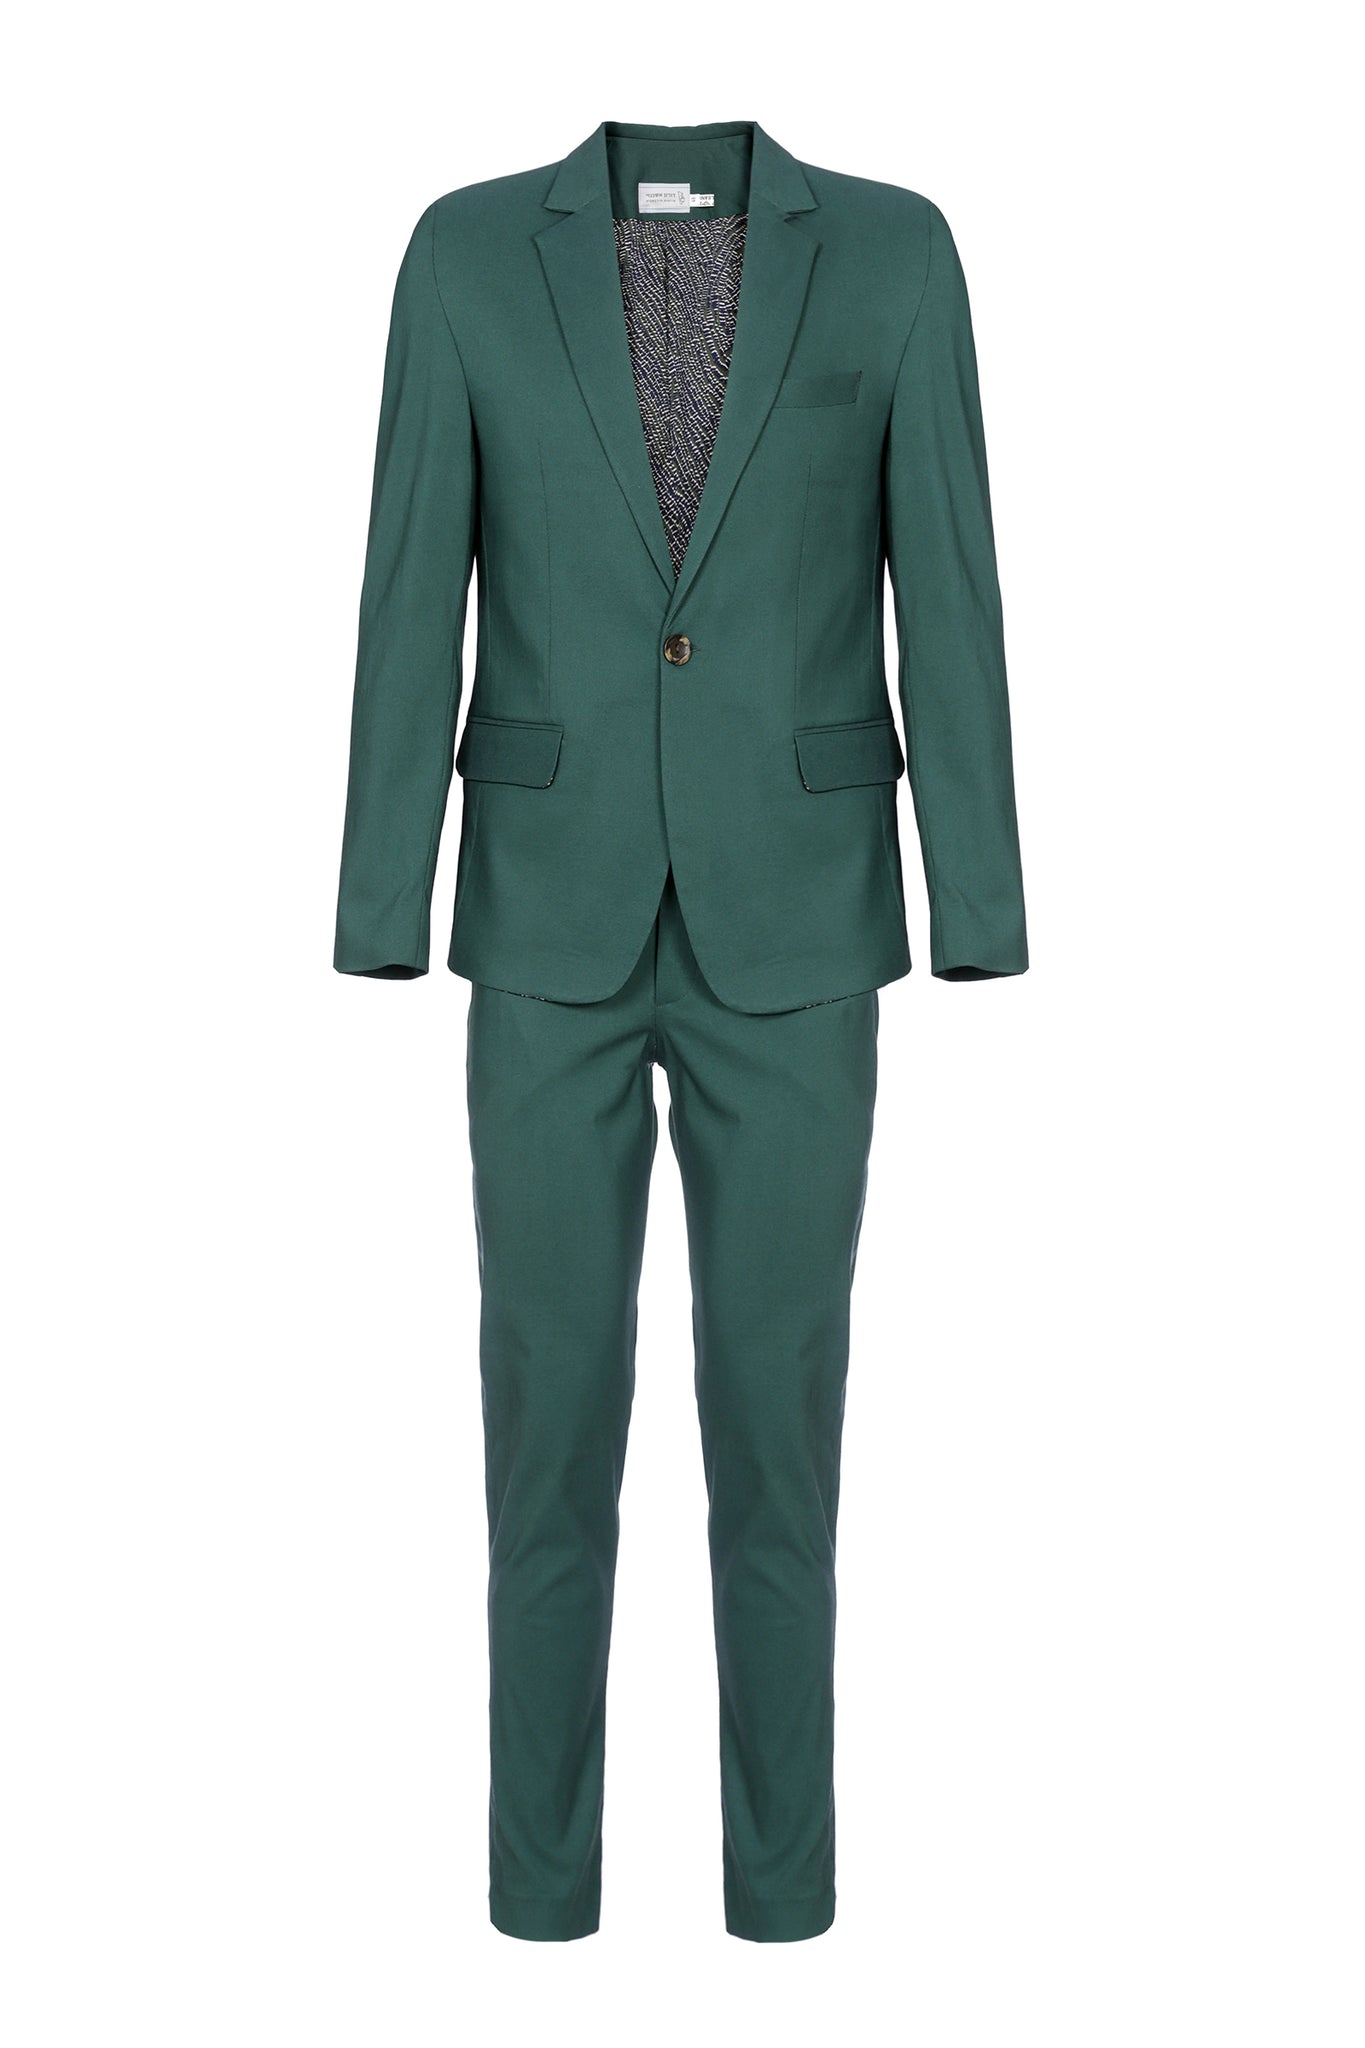 חליפה סקיני - צבע ירוק